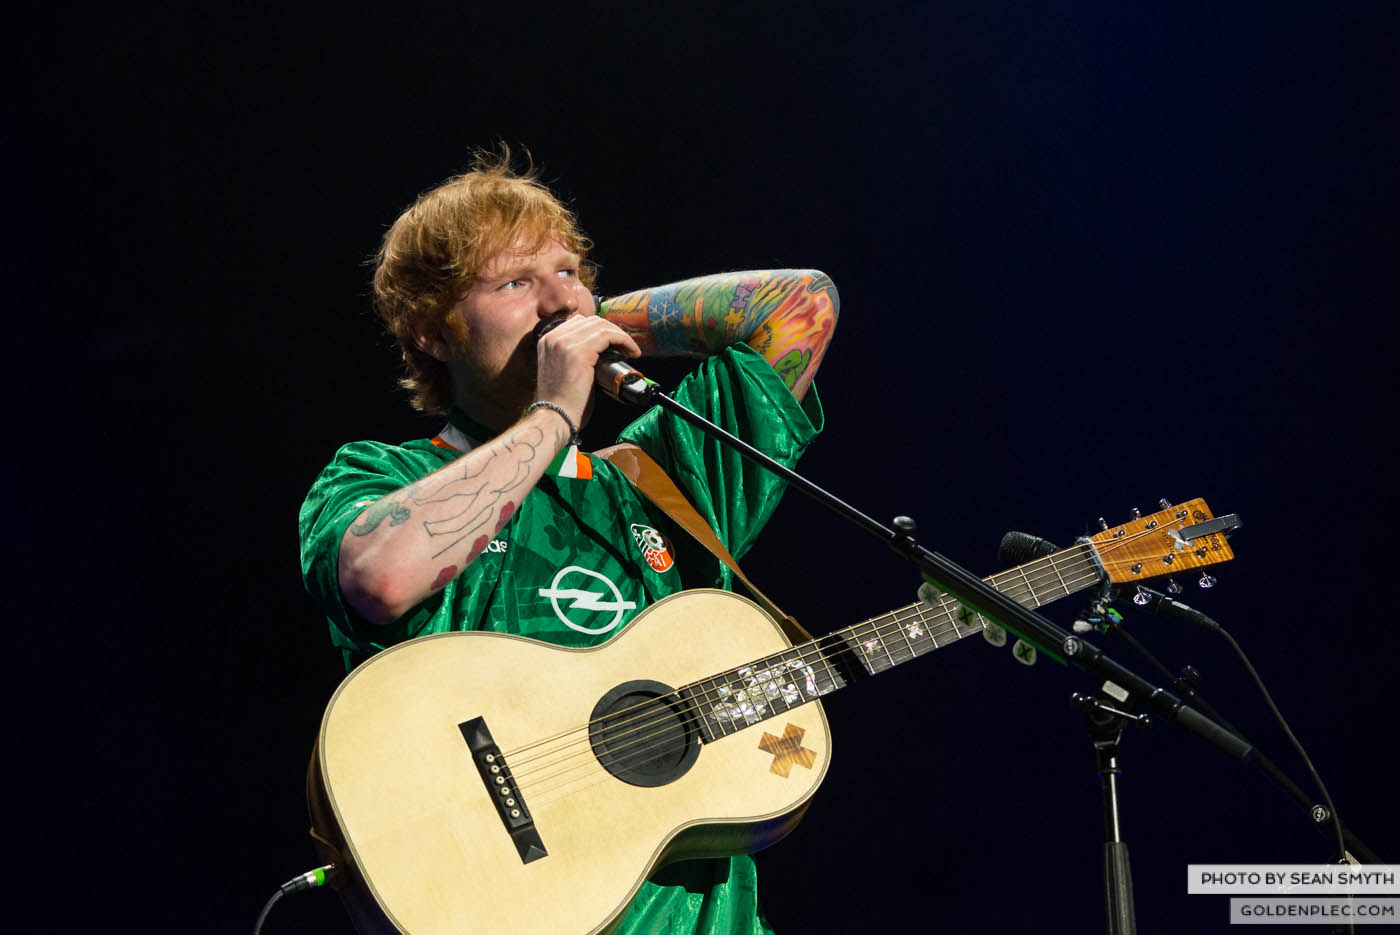 Ed Sheeran at 3arena, Dublin